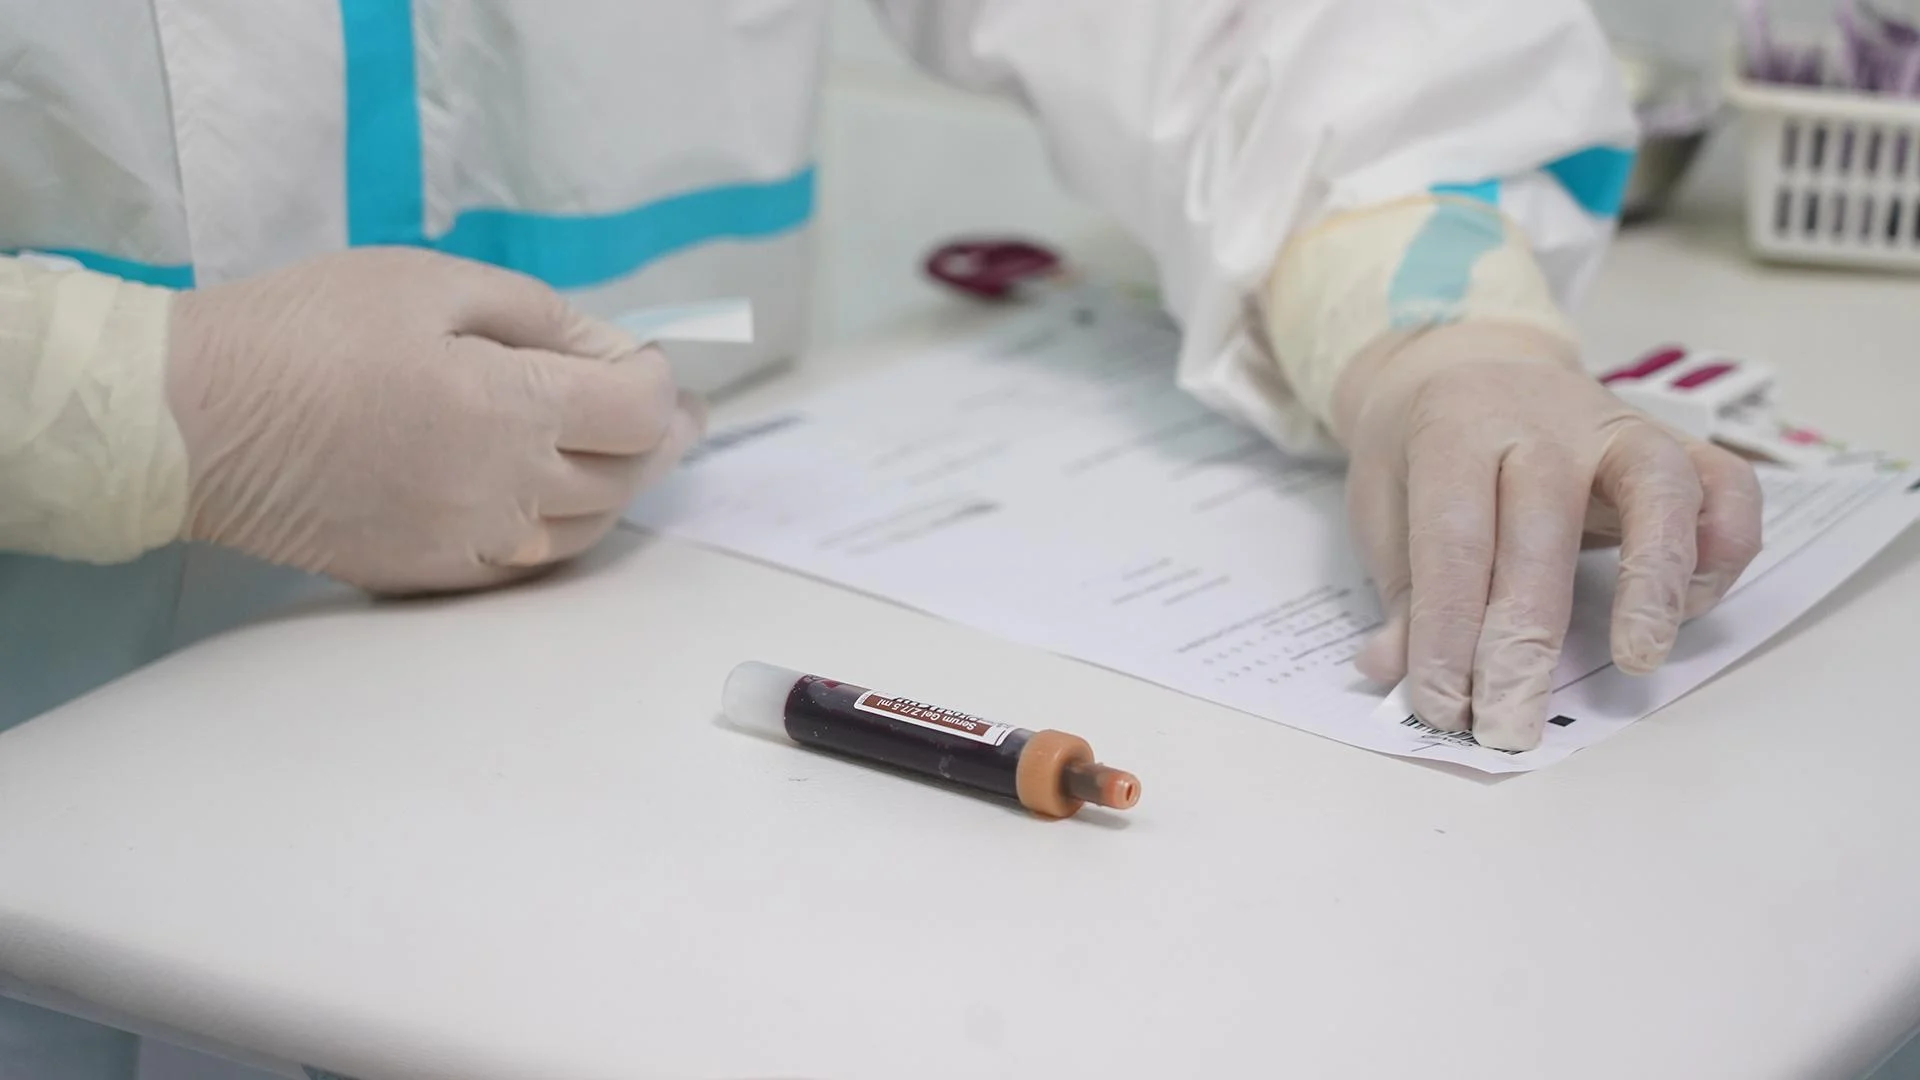 В одной из клиник Днепра произошла утечка медицинских данных, включая результаты тестов на Covid-19